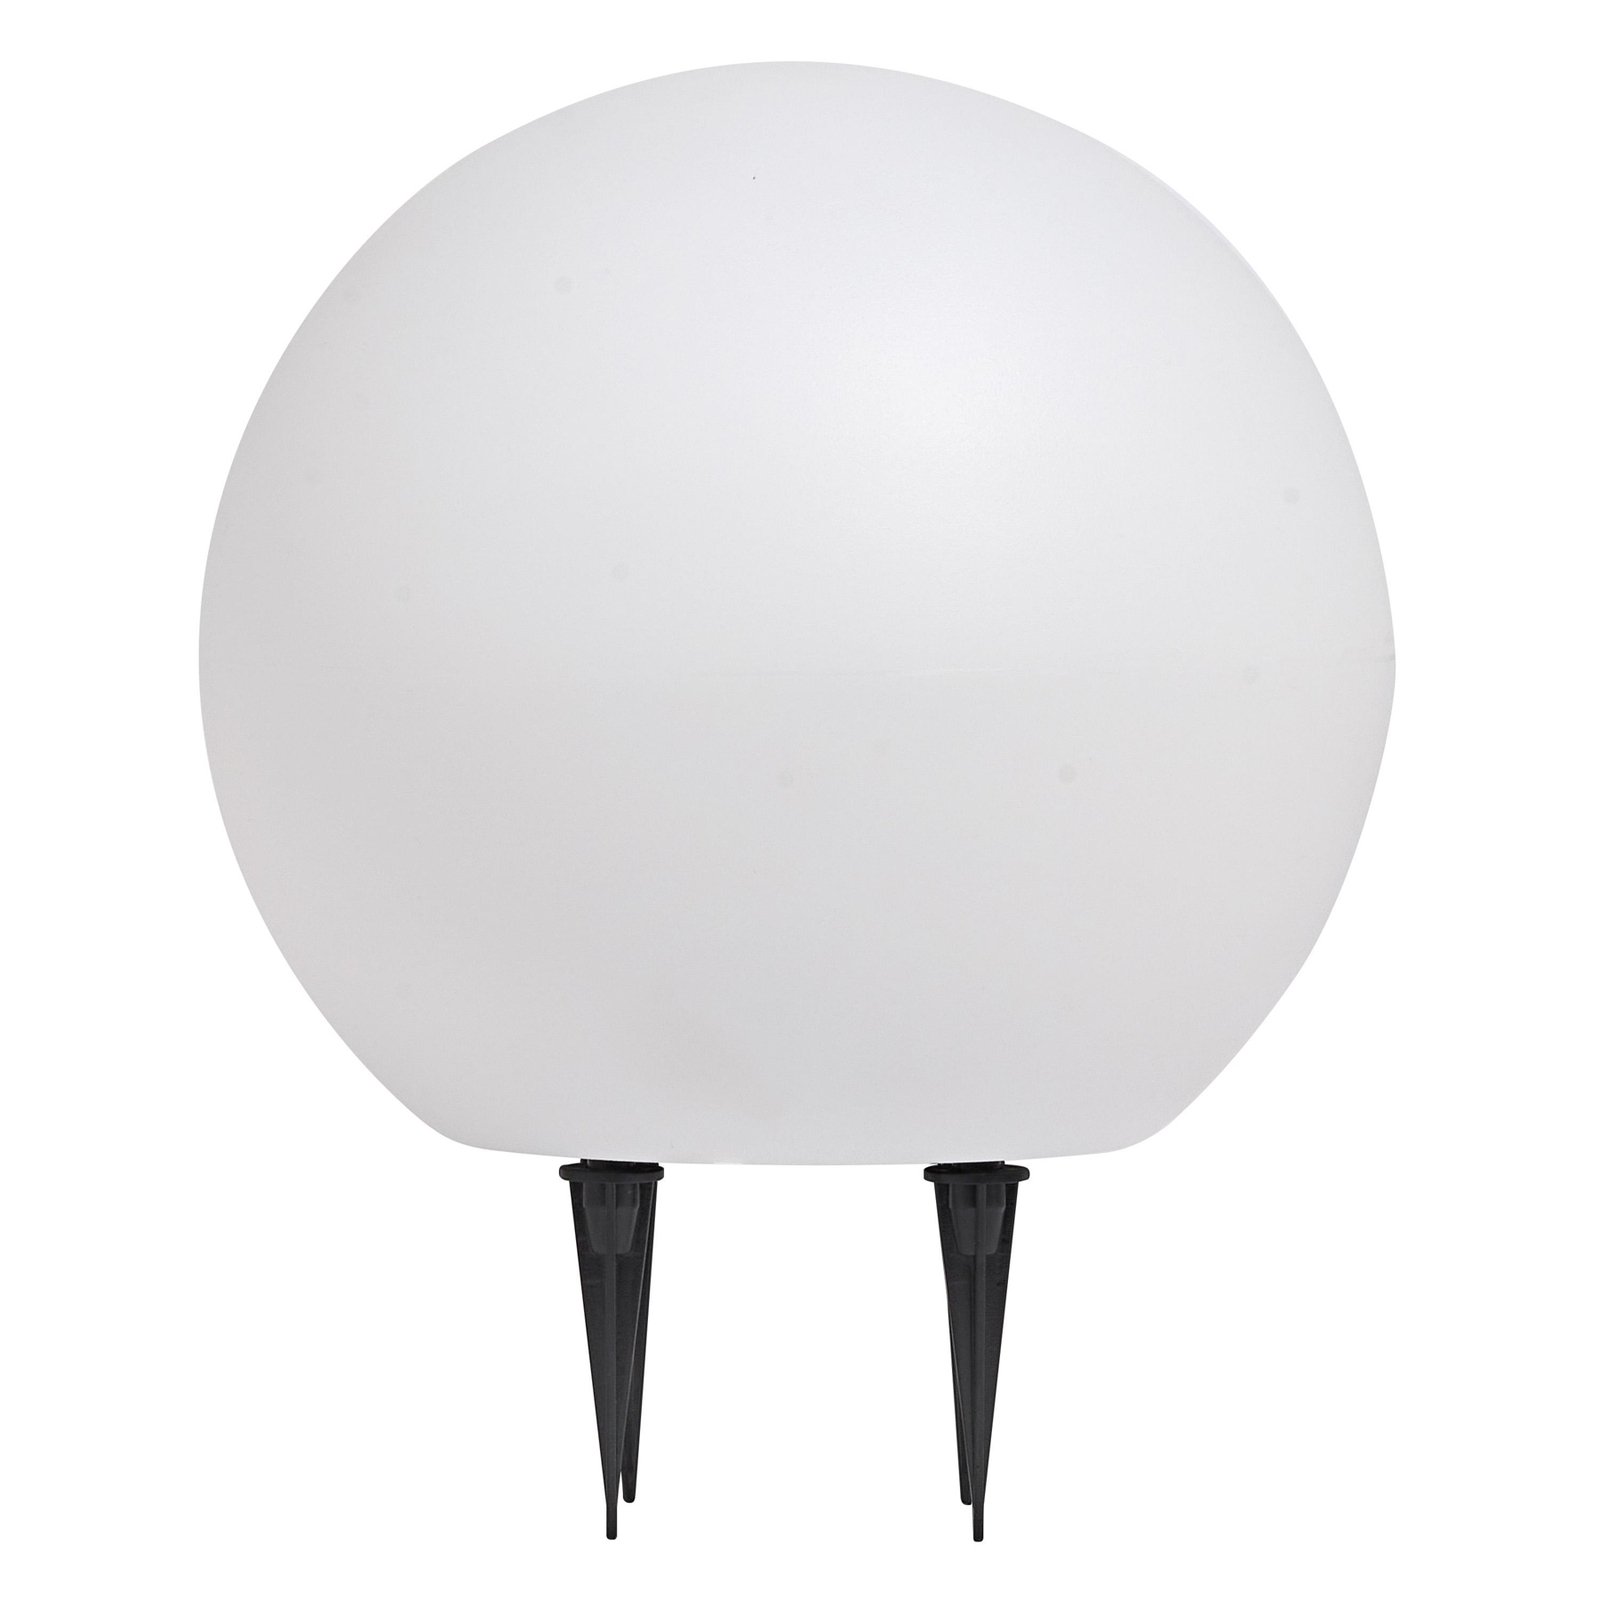 LEDVANCE lampa z grotem ziemnym Endura Hybrid Ball 2W, biała